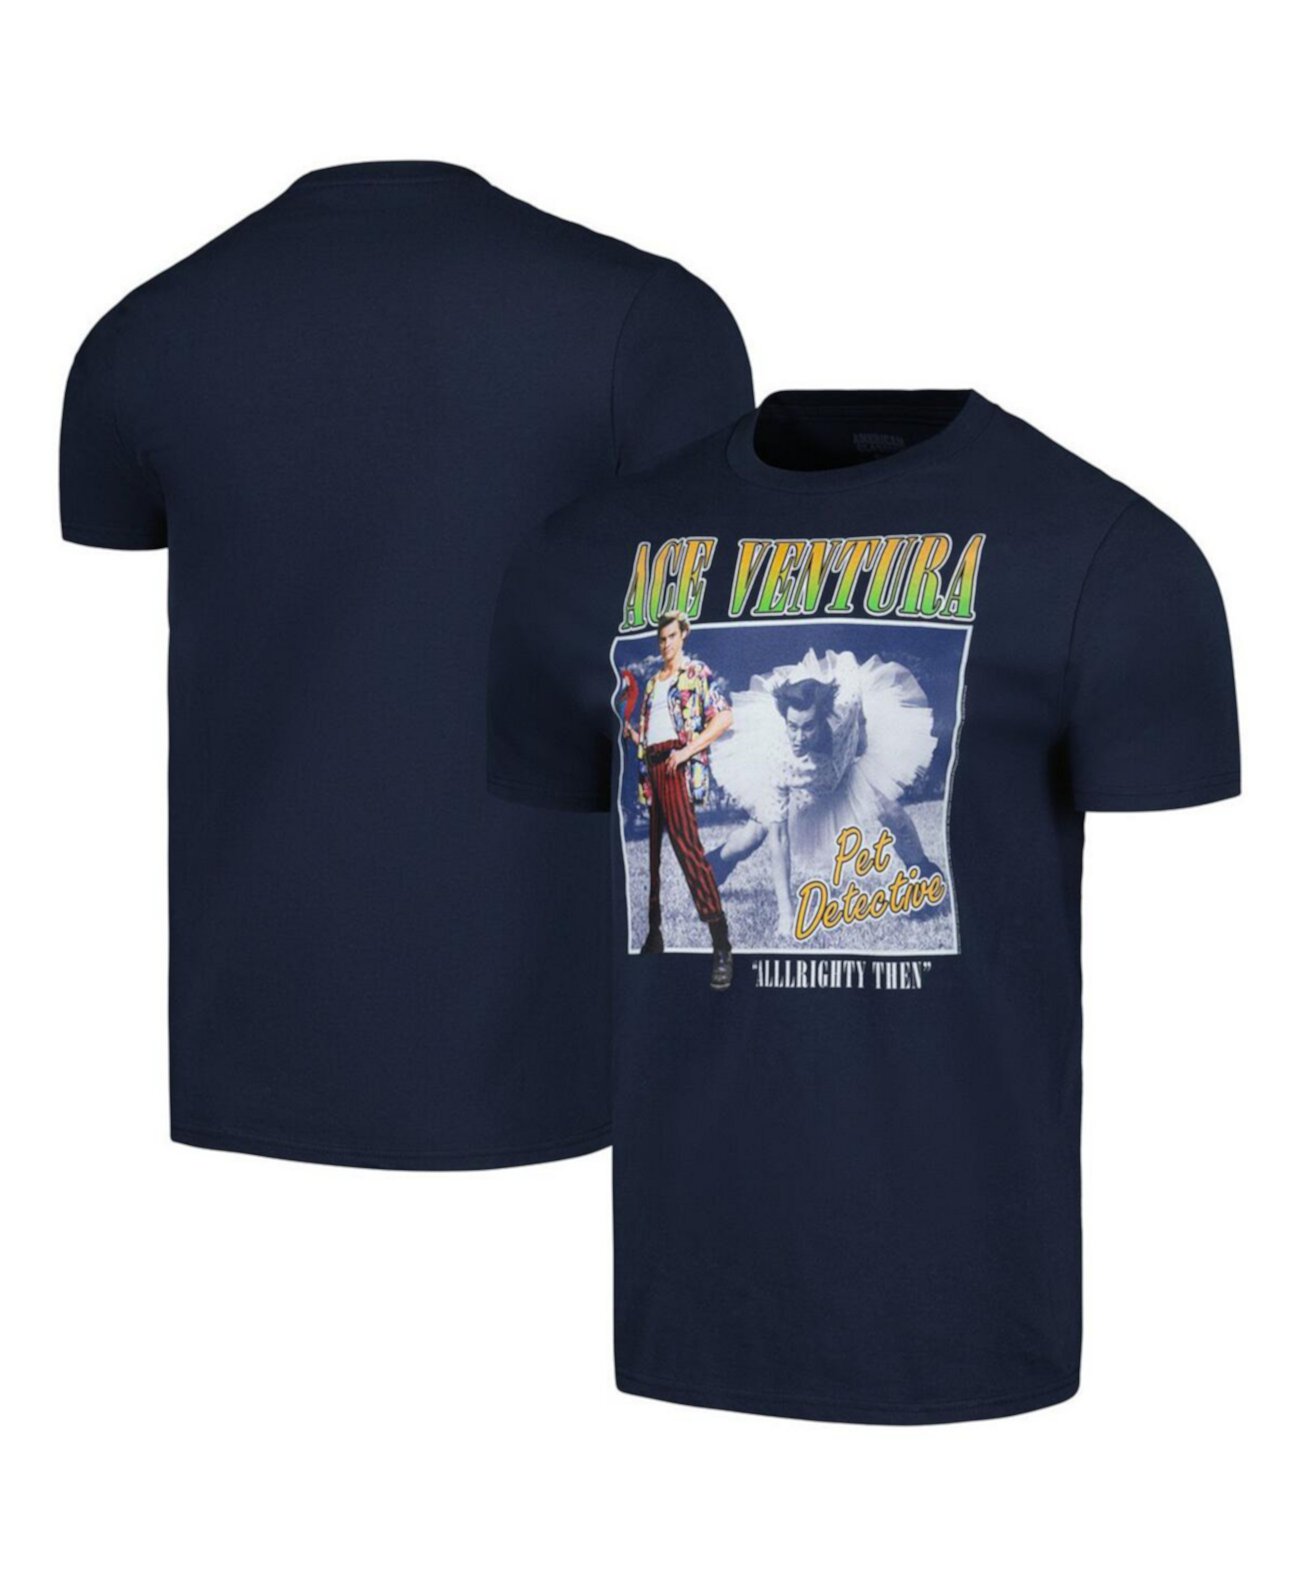 Мужская темно-синяя футболка с рисунком Ace Ventura American Classics